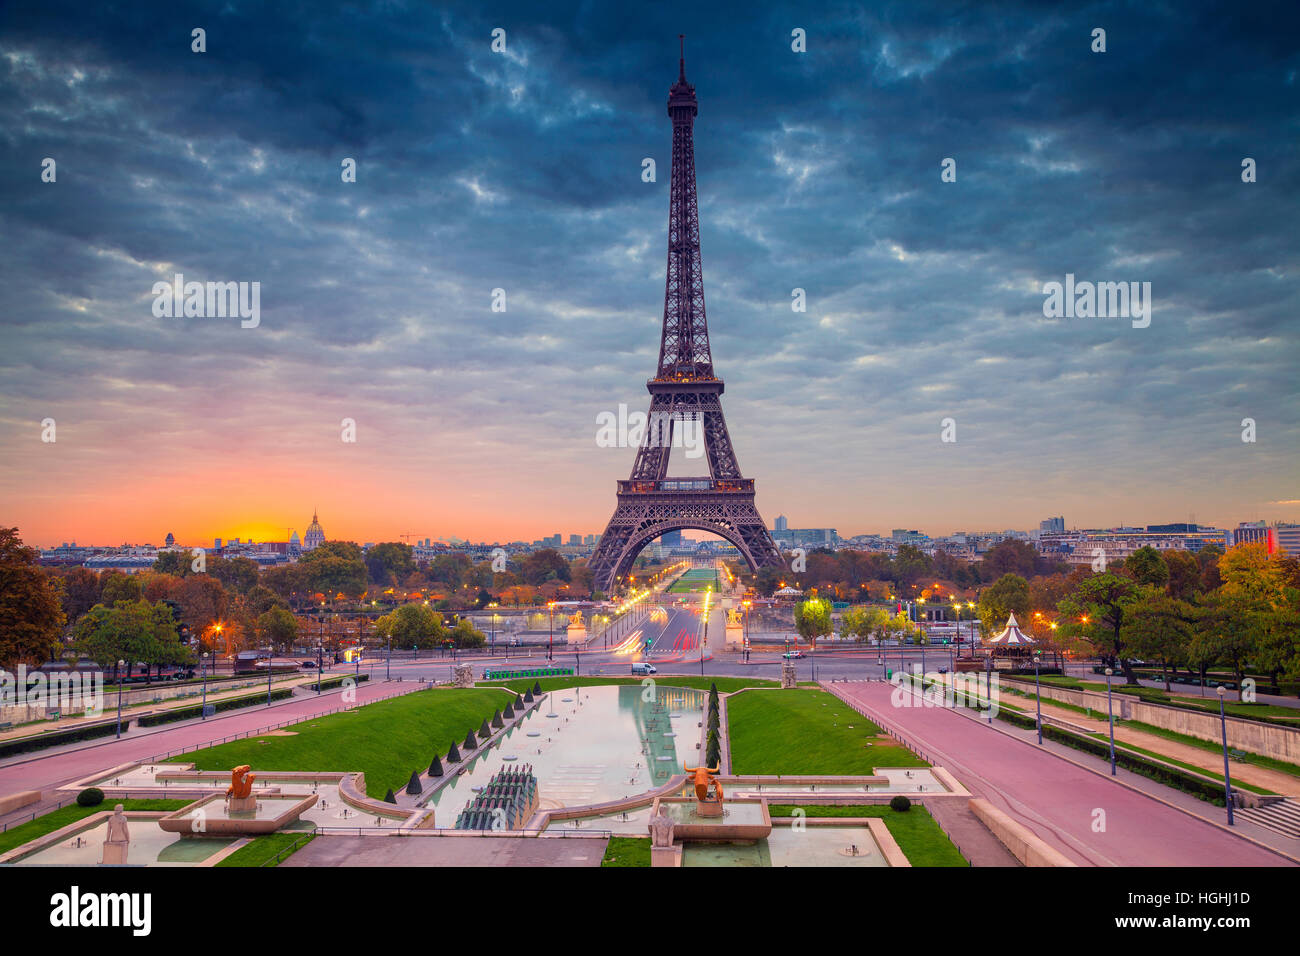 París. Imagen del paisaje urbano de París, Francia, con la Torre Eiffel durante el amanecer. Foto de stock